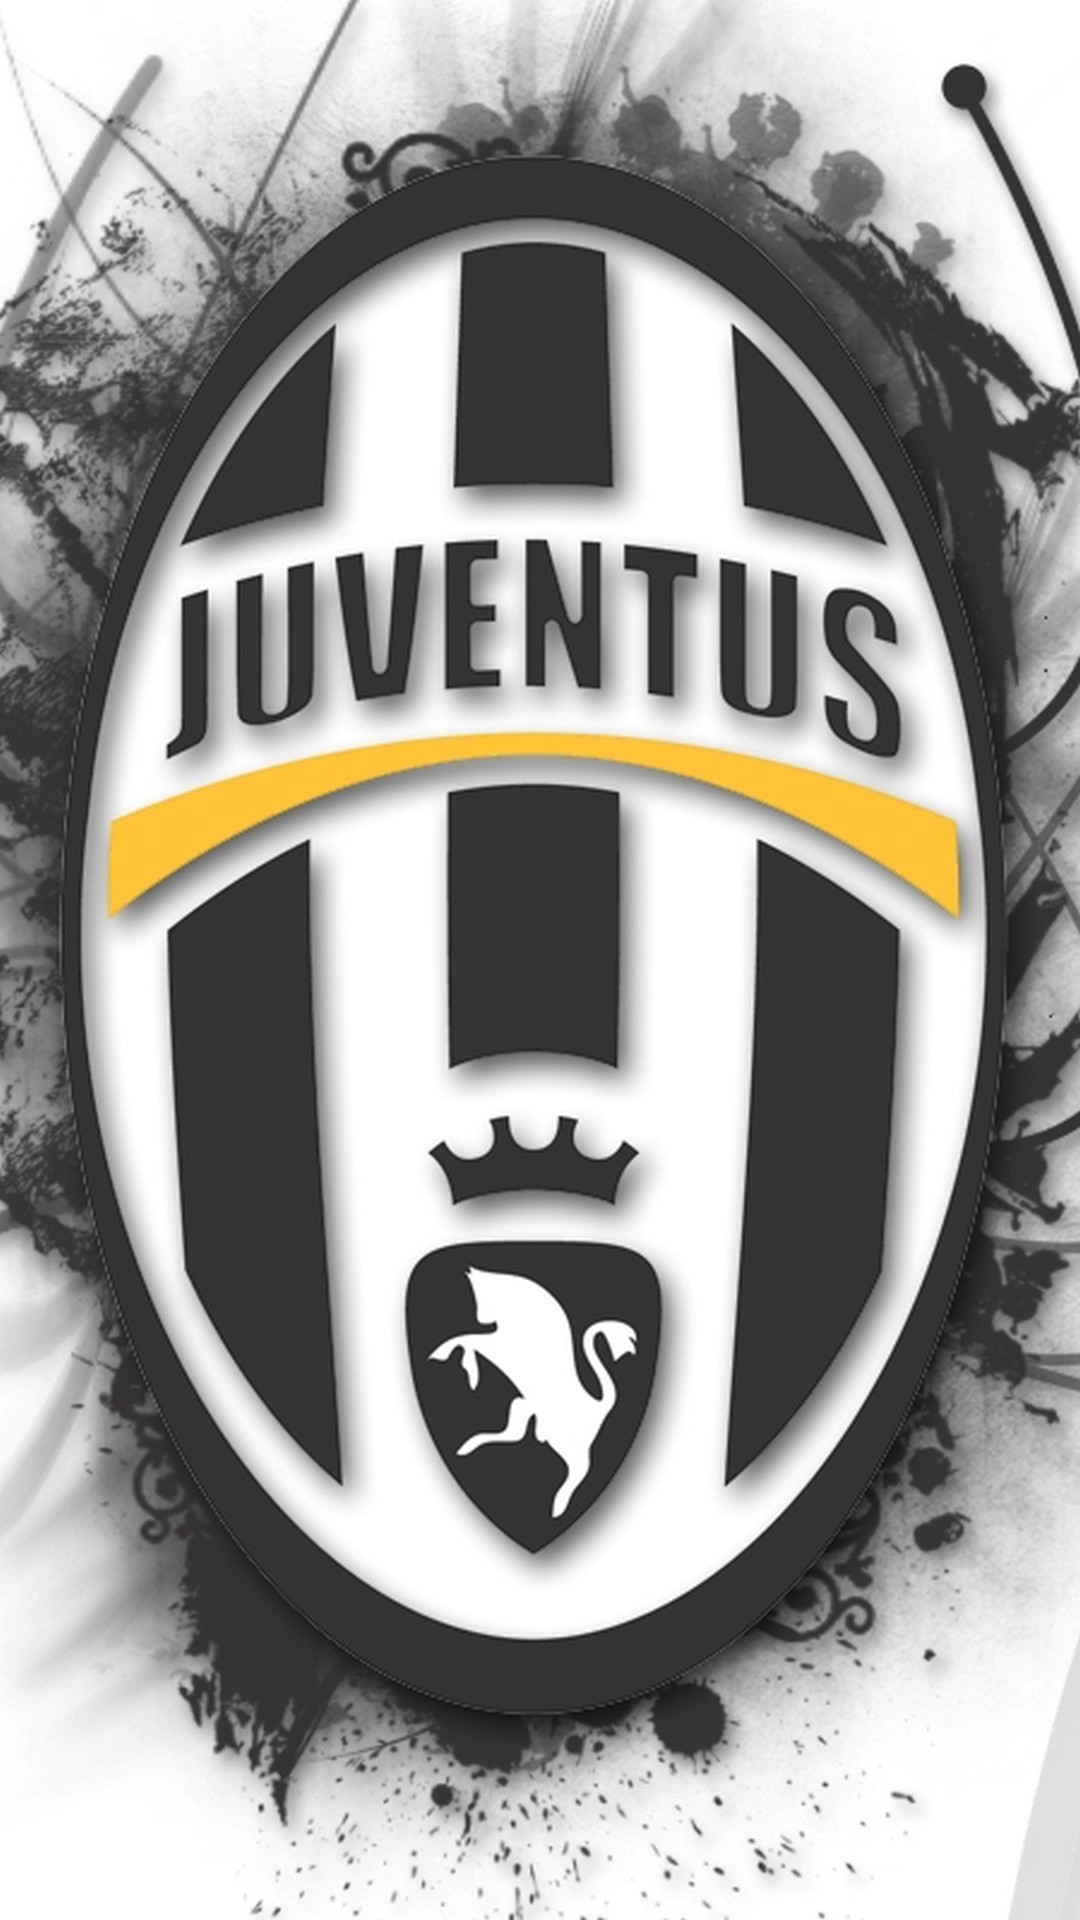 1080x1920 Juventus Wallpaper Iphone 7 resolution 